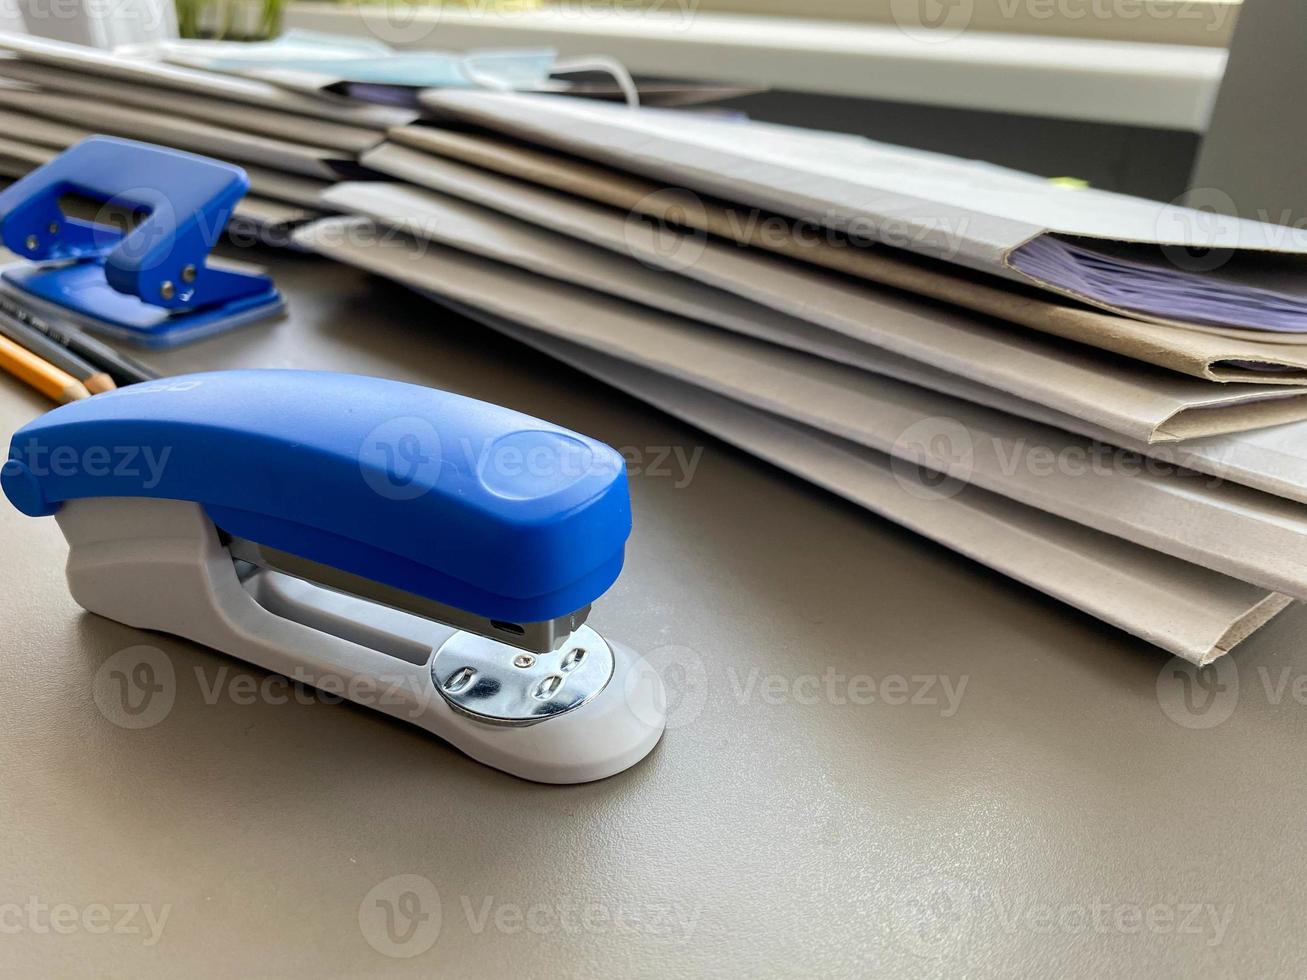 een groot blauw nietmachine voor nieten papier leugens De volgende naar de mappen van documenten Aan de werken bedrijf bureau in de kantoor. schrijfbehoeften foto